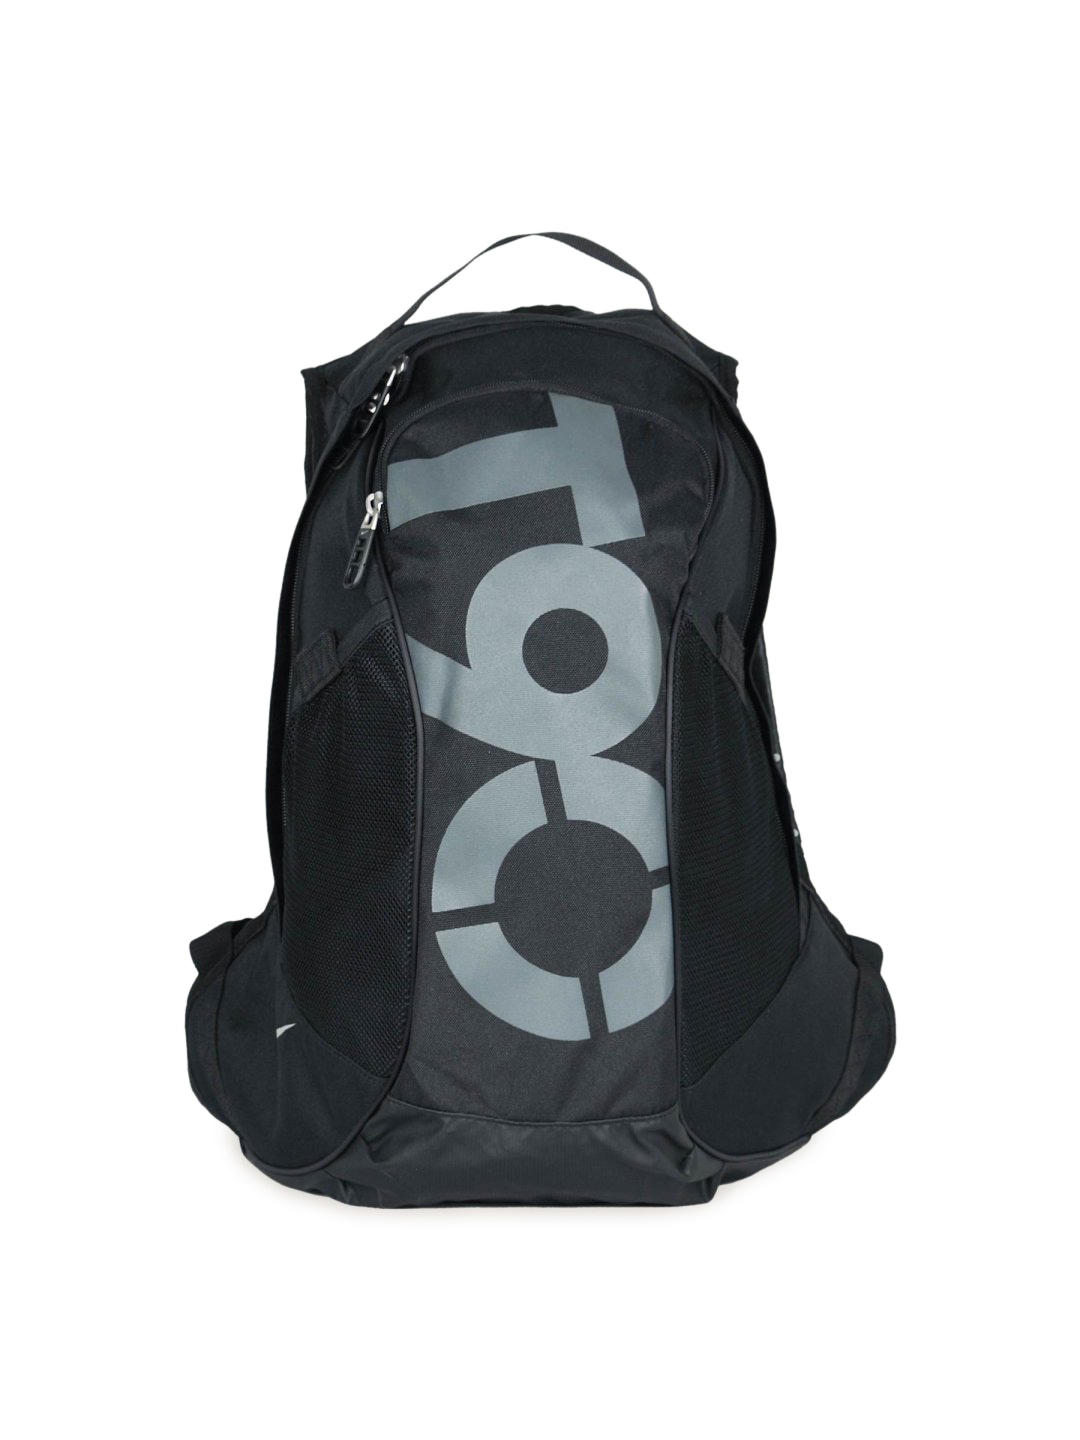 Nike Unisex Total 90 Stri Backpack